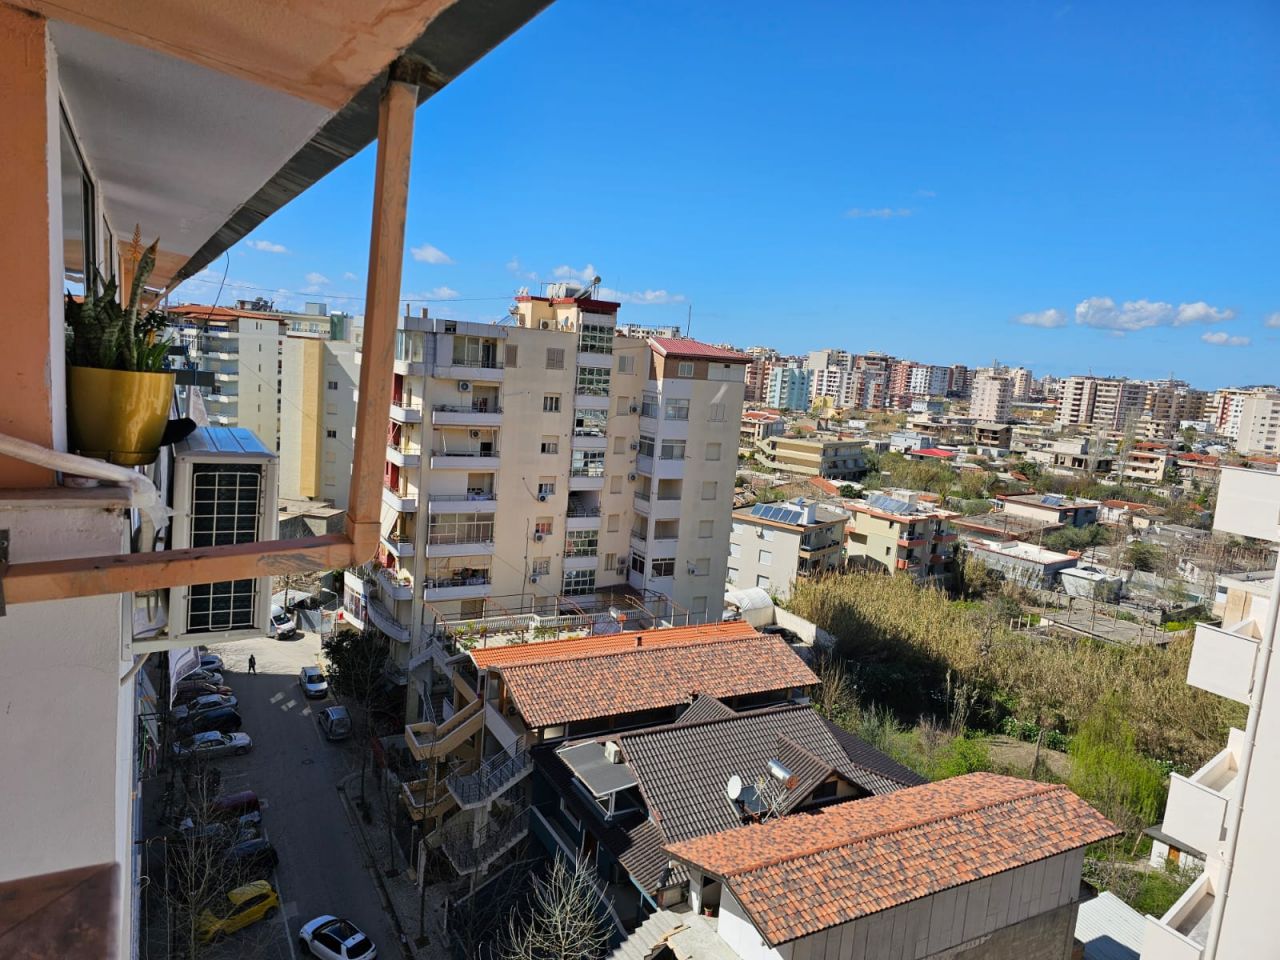 Wohnung Zum Verkauf In Lungomare Vlore Albanien